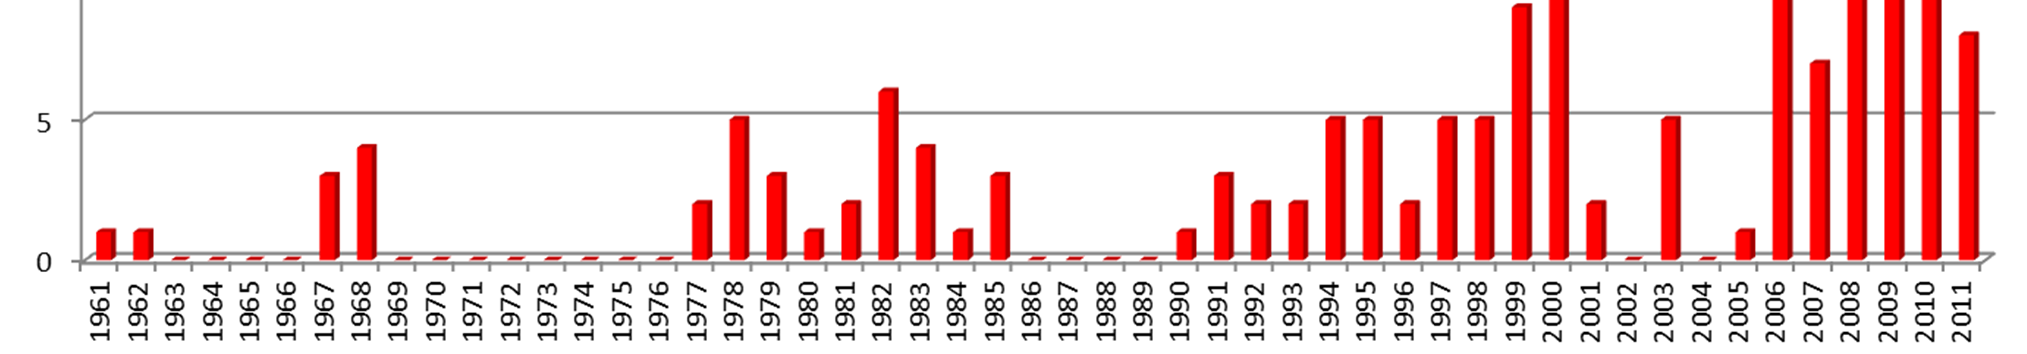 Stimulation von Erdgas Lagerstätten angewendet; seit 1968: 168